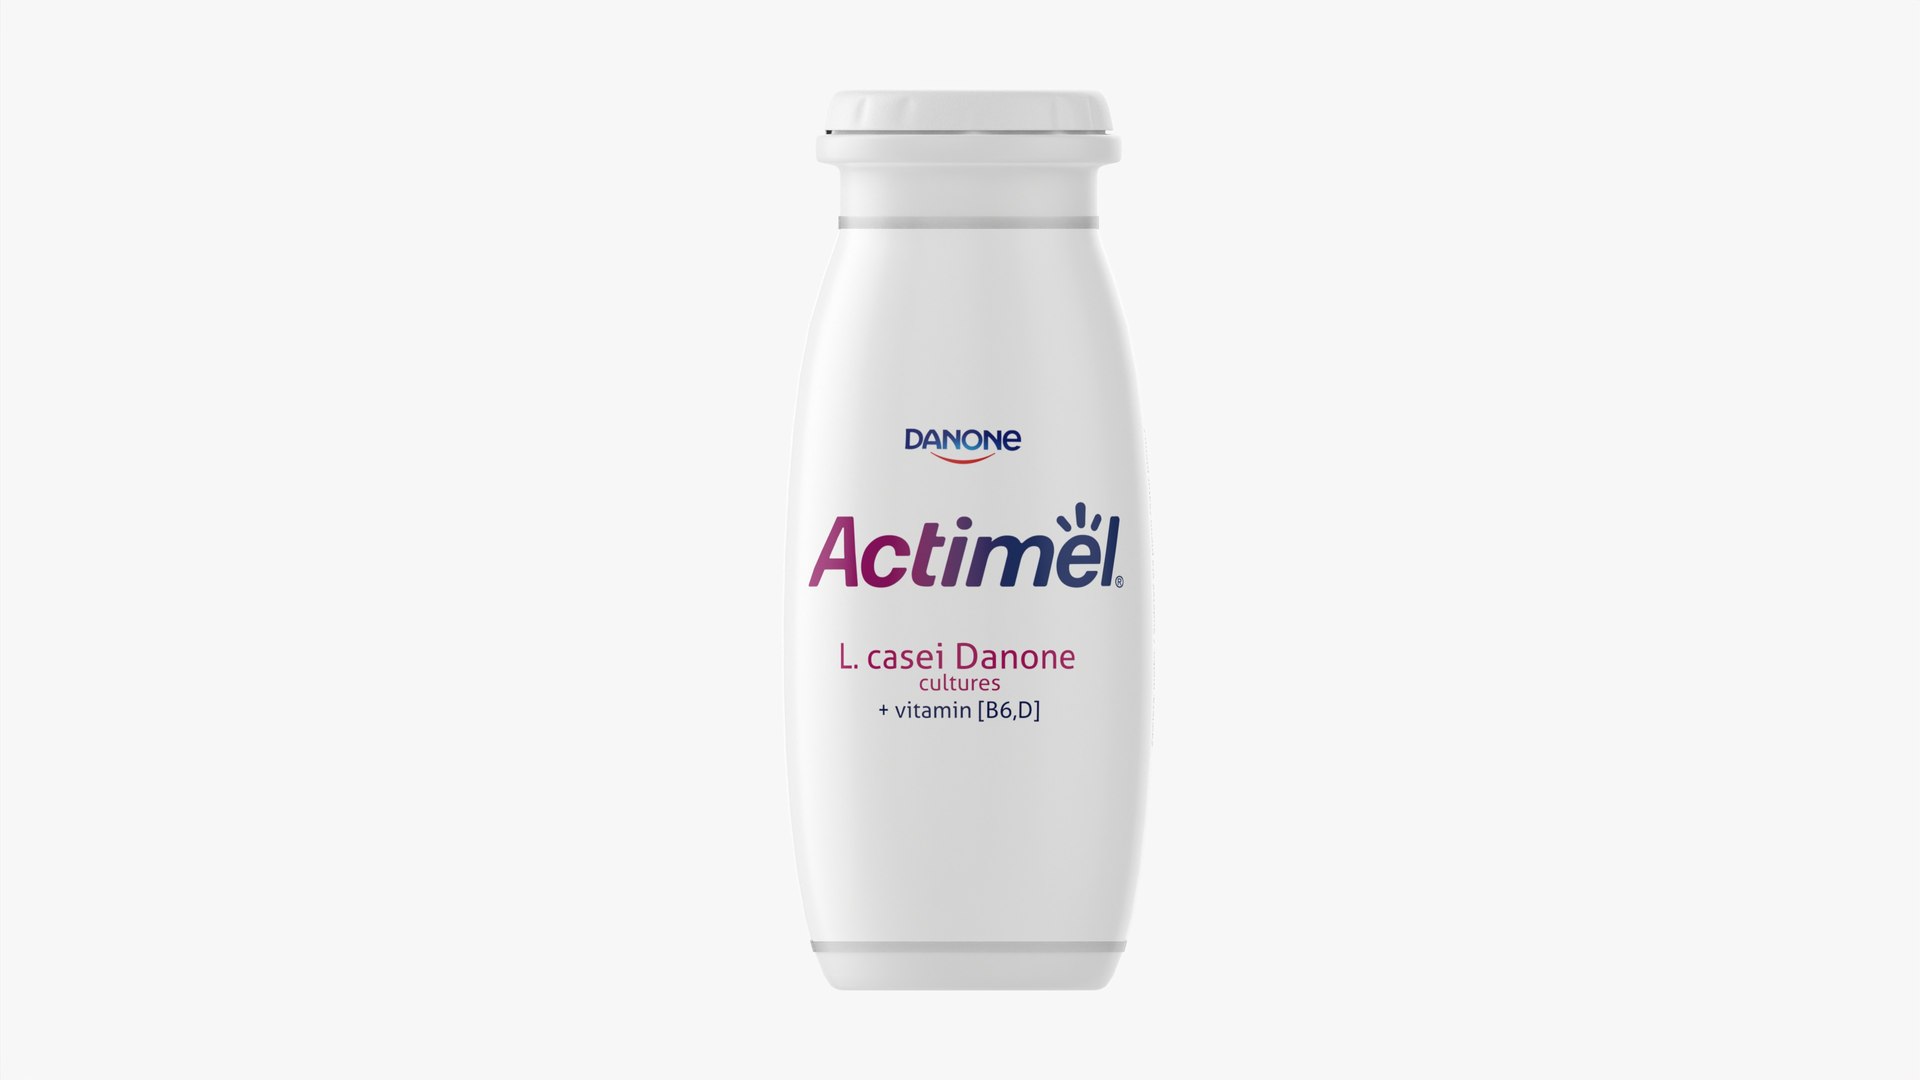 3D Danone Actimel bottle - TurboSquid 1811698